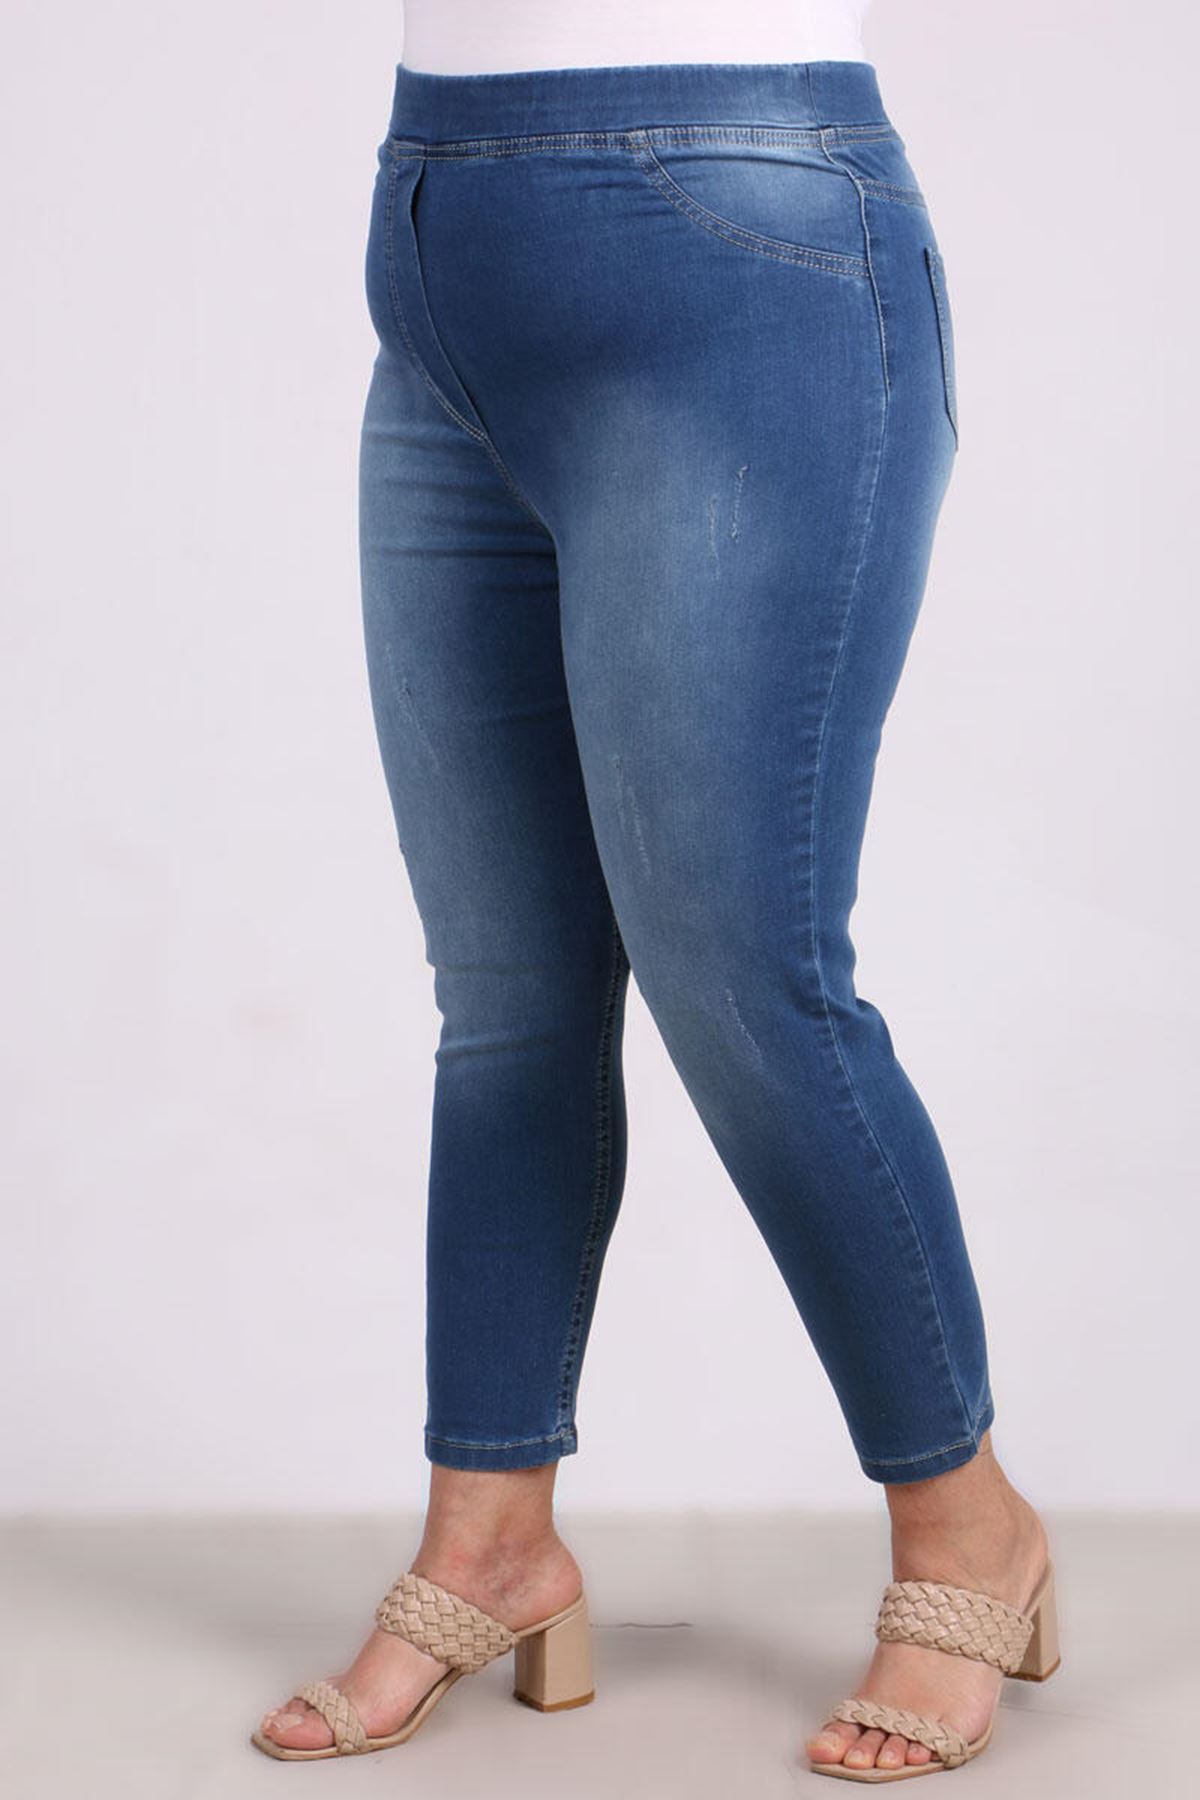 9109-10 Büyük Beden Beli Lastikli Tırnaklı  Dar Paça Kot Pantalon-Açık Mavi